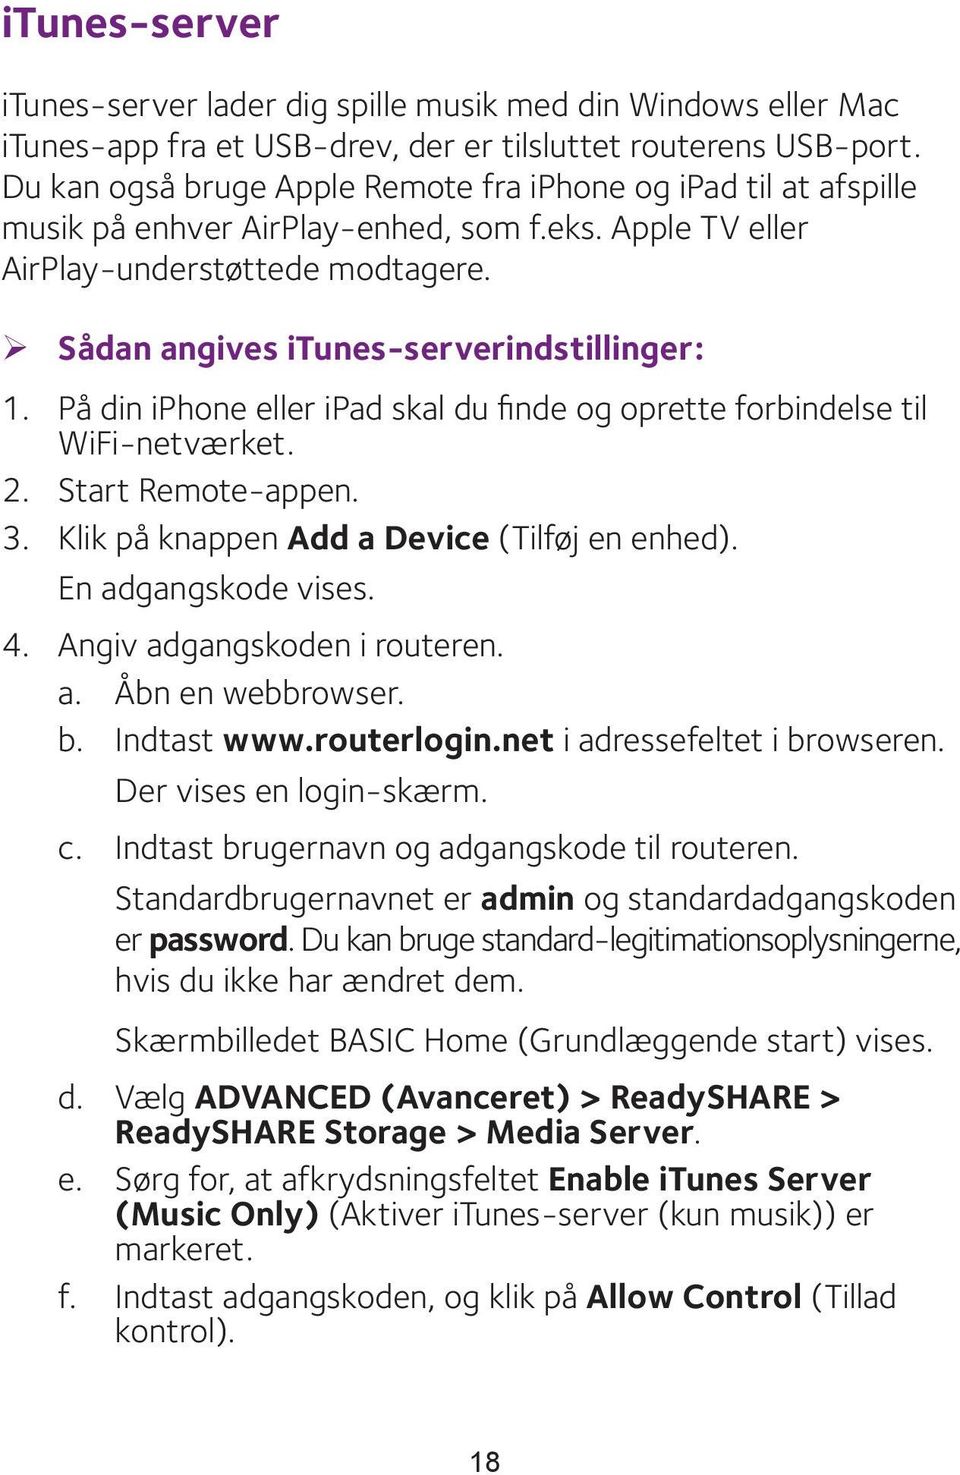 ¾ Sådan angives itunes-serverindstillinger: 1. På din iphone eller ipad skal du finde og oprette forbindelse til WiFi-netværket. 2. Start Remote-appen. 3.